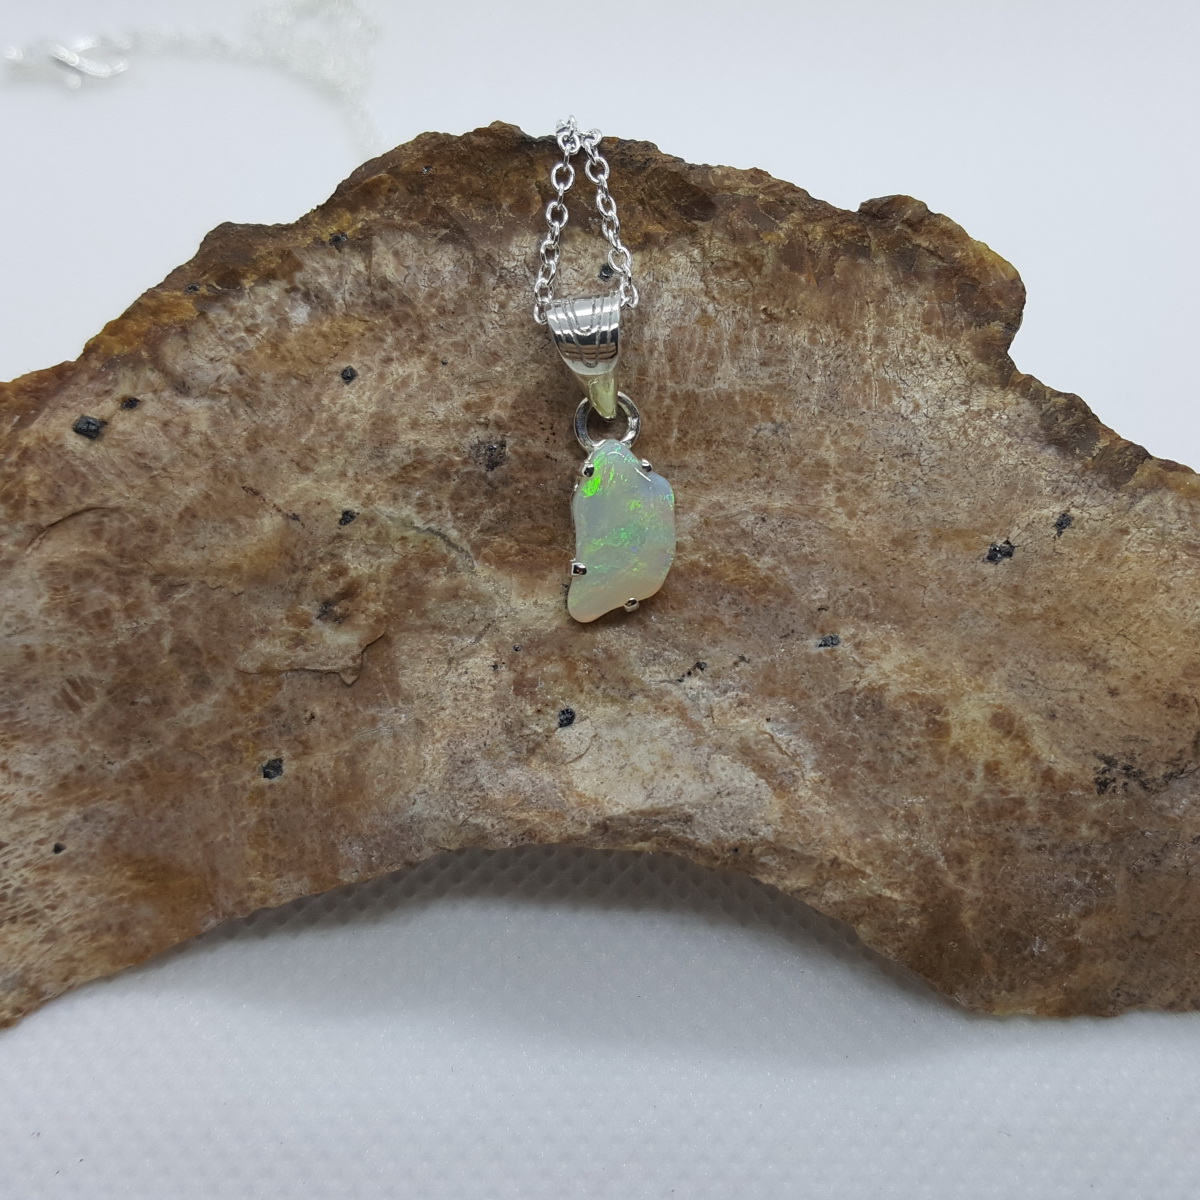 29.4 Ct. Boulder Opal - Pendant, Necklace - Koroit, Australia - 24.7 x 17 mm